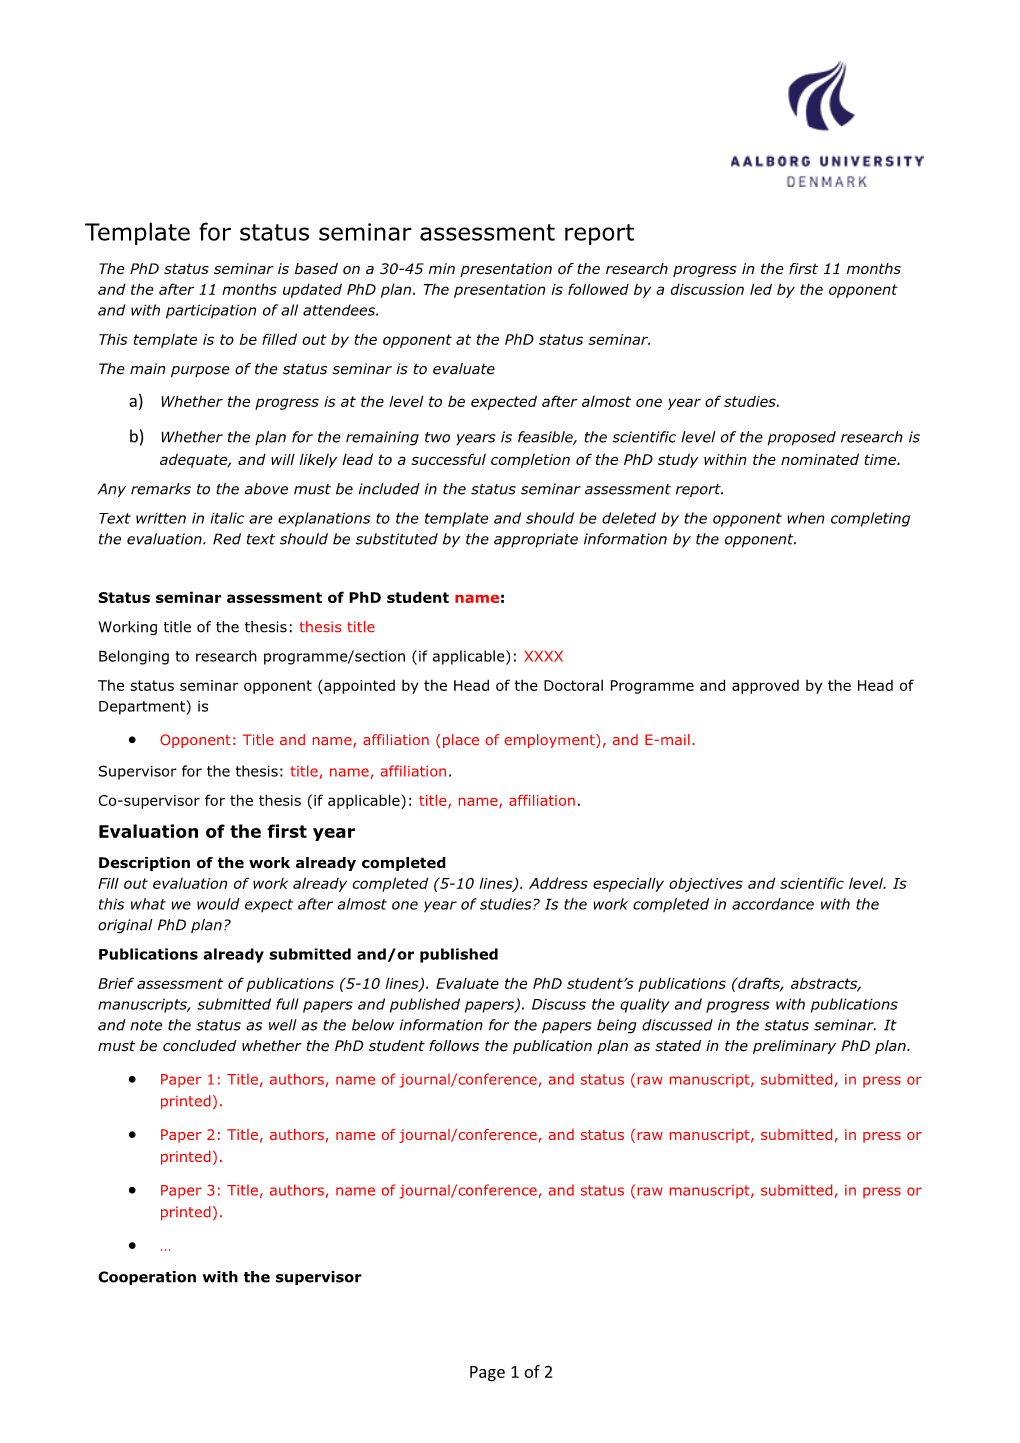 Template for Status Seminar Assessment Report